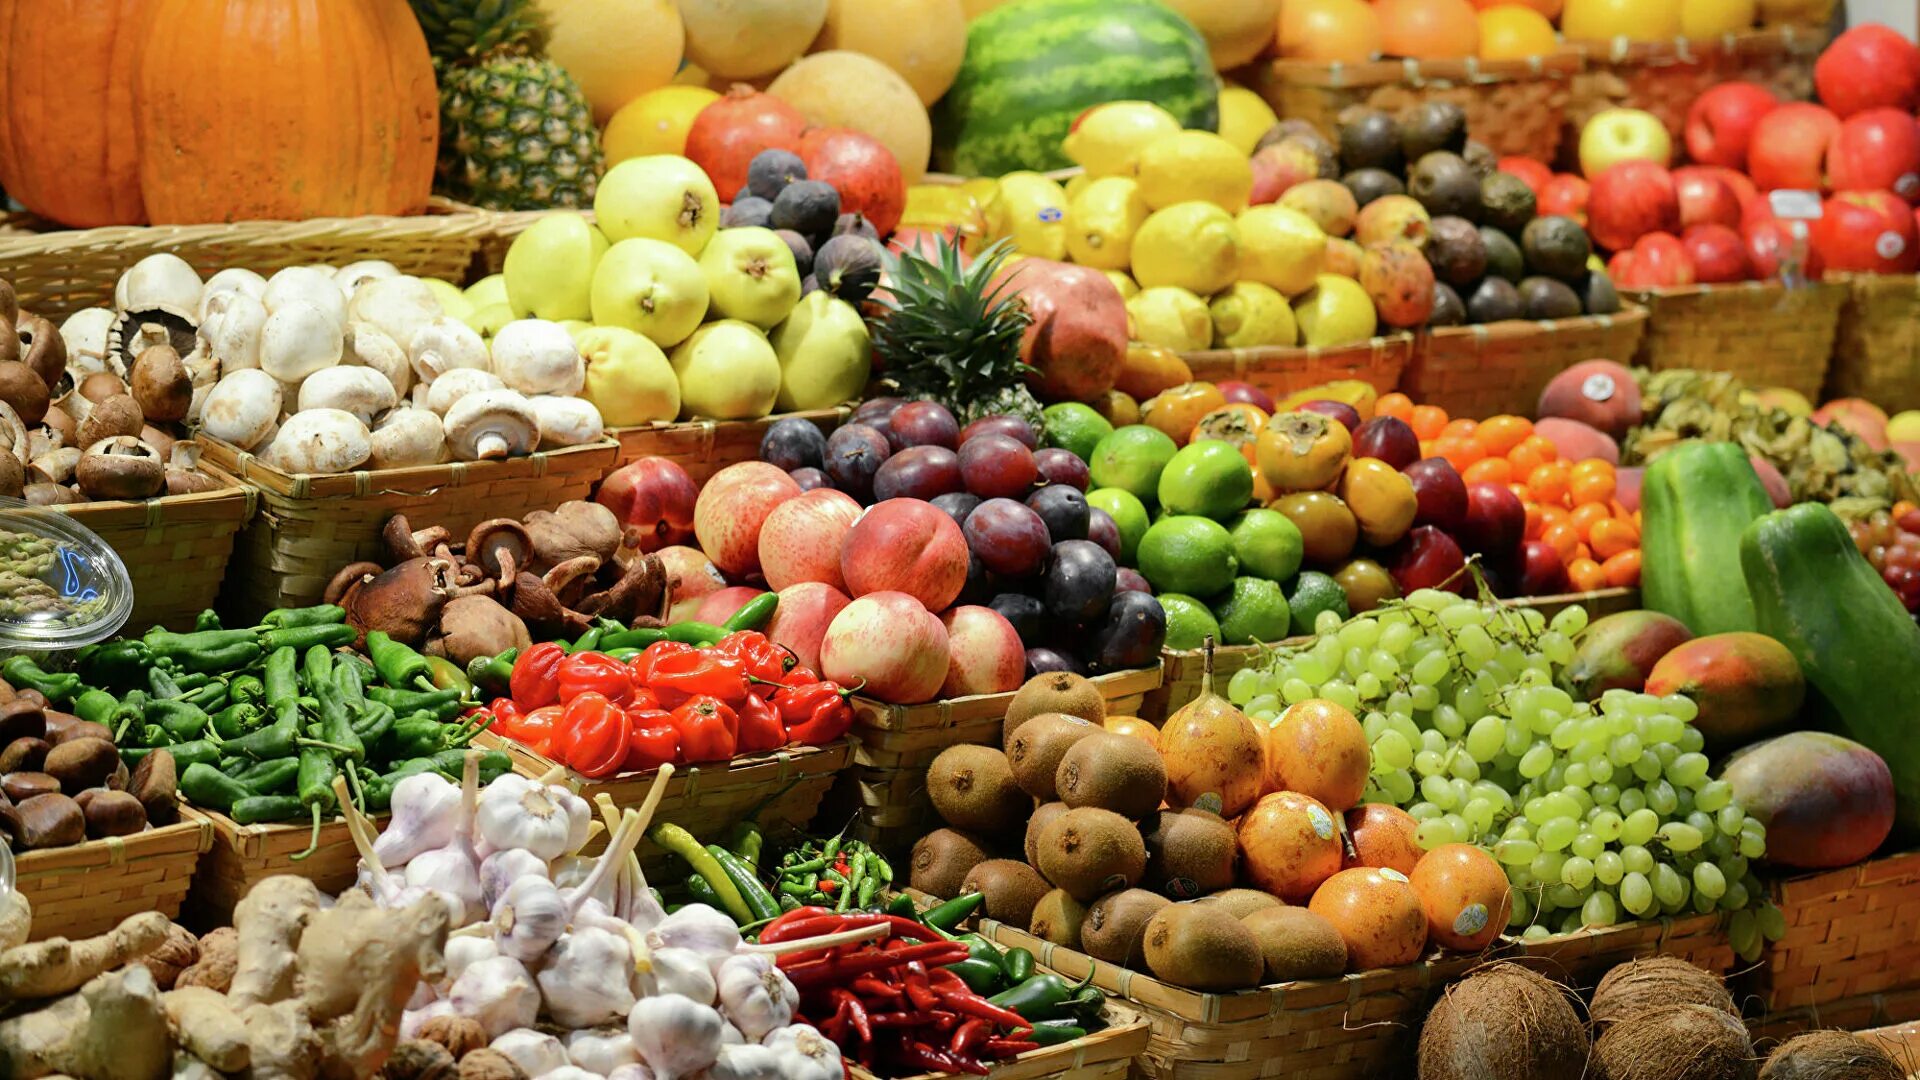 Фон базара. Органик мева сабзавот. Мева-сабзавот кластер. Овощи и фрукты. Овощи и фрукты на рынке.